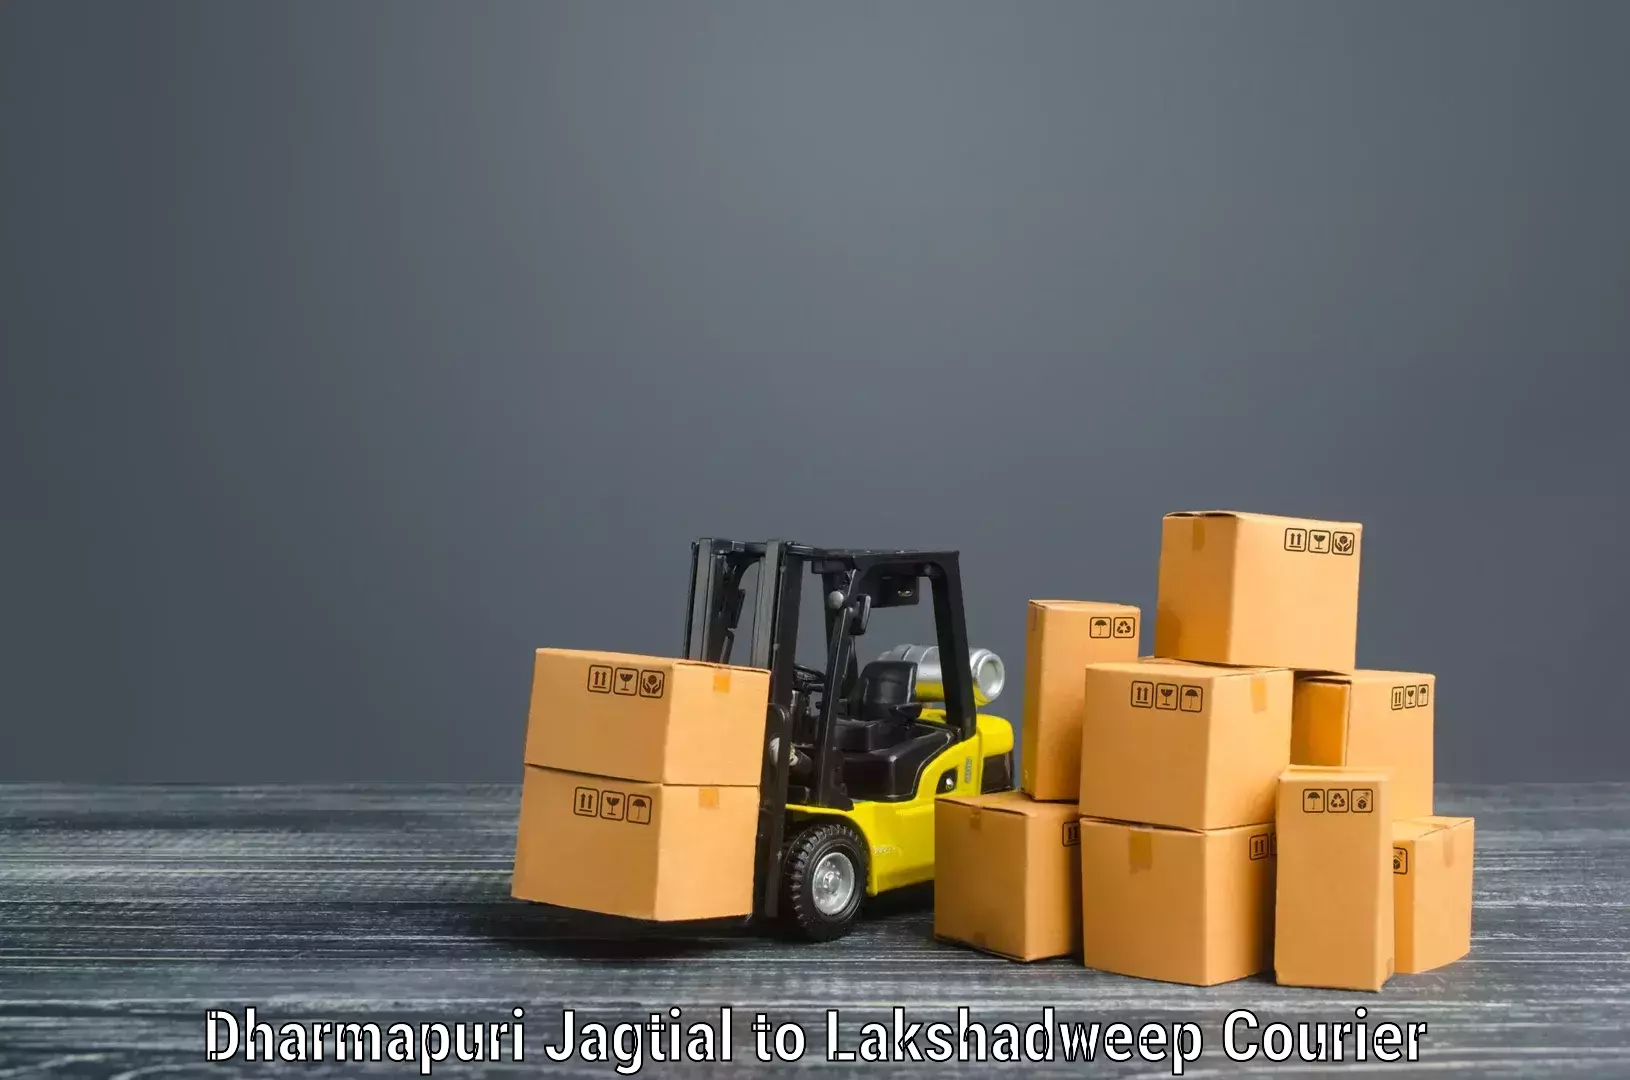 Furniture moving solutions in Dharmapuri Jagtial to Lakshadweep